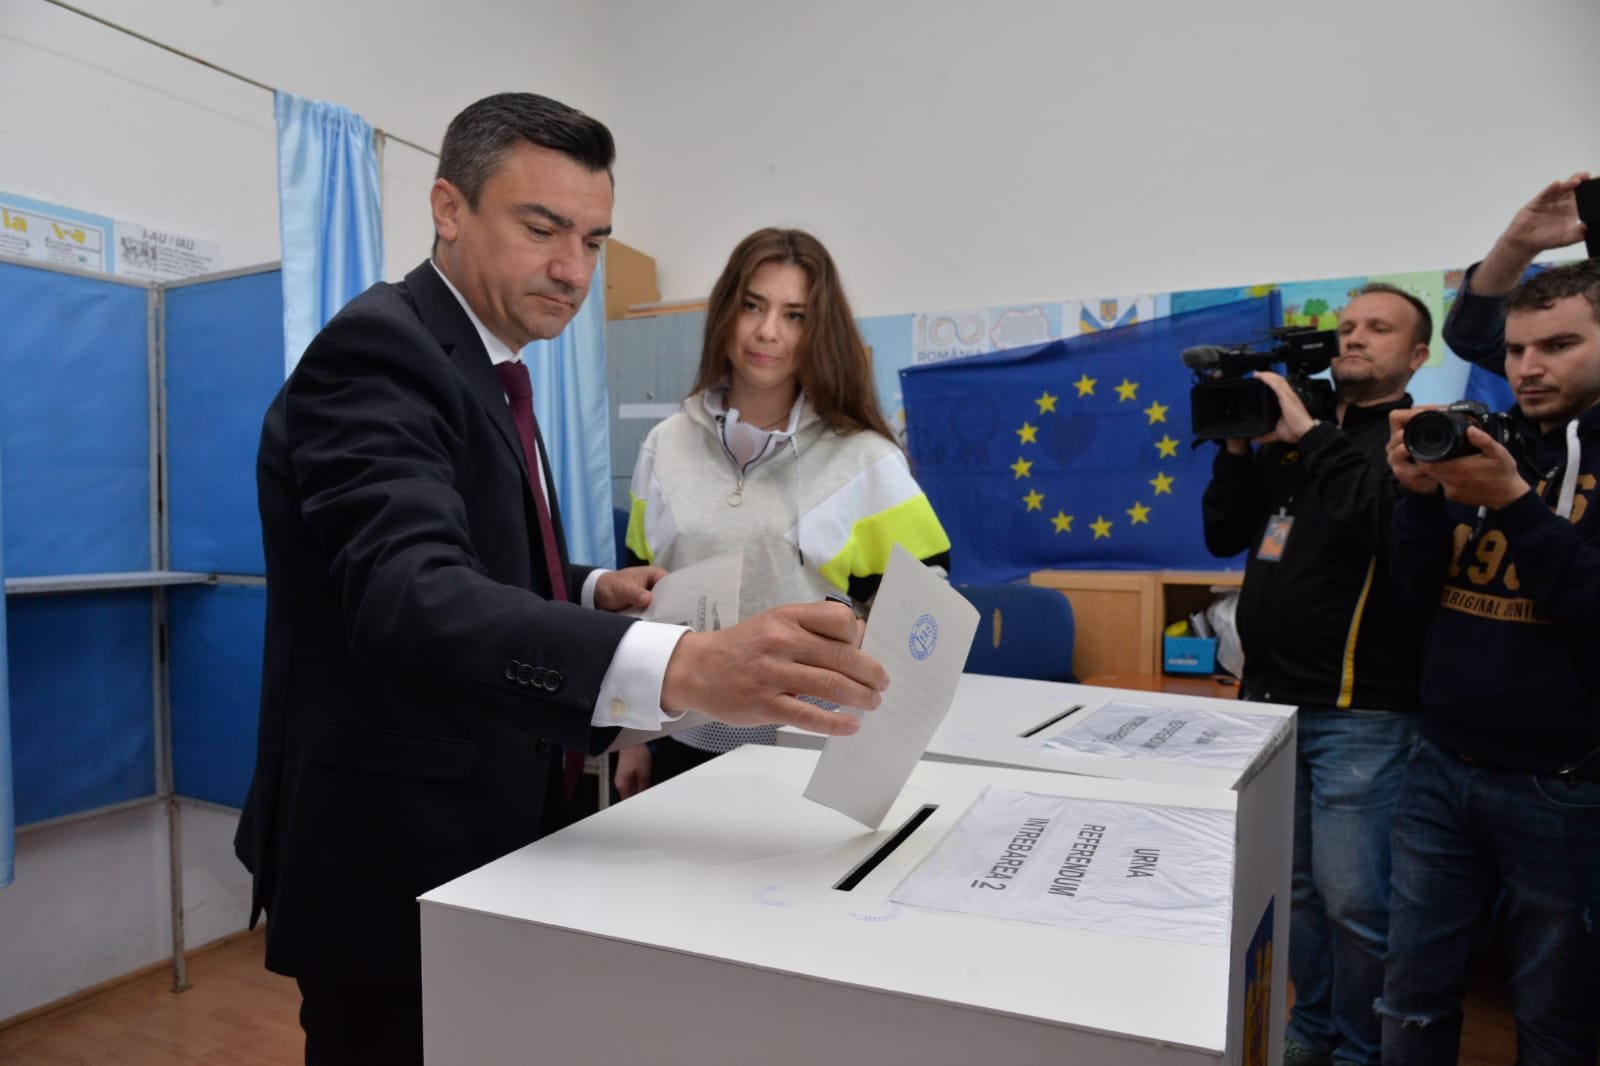  FOTO: Mihai Chirica și candidatul pe care îl susține au votat la prima oră